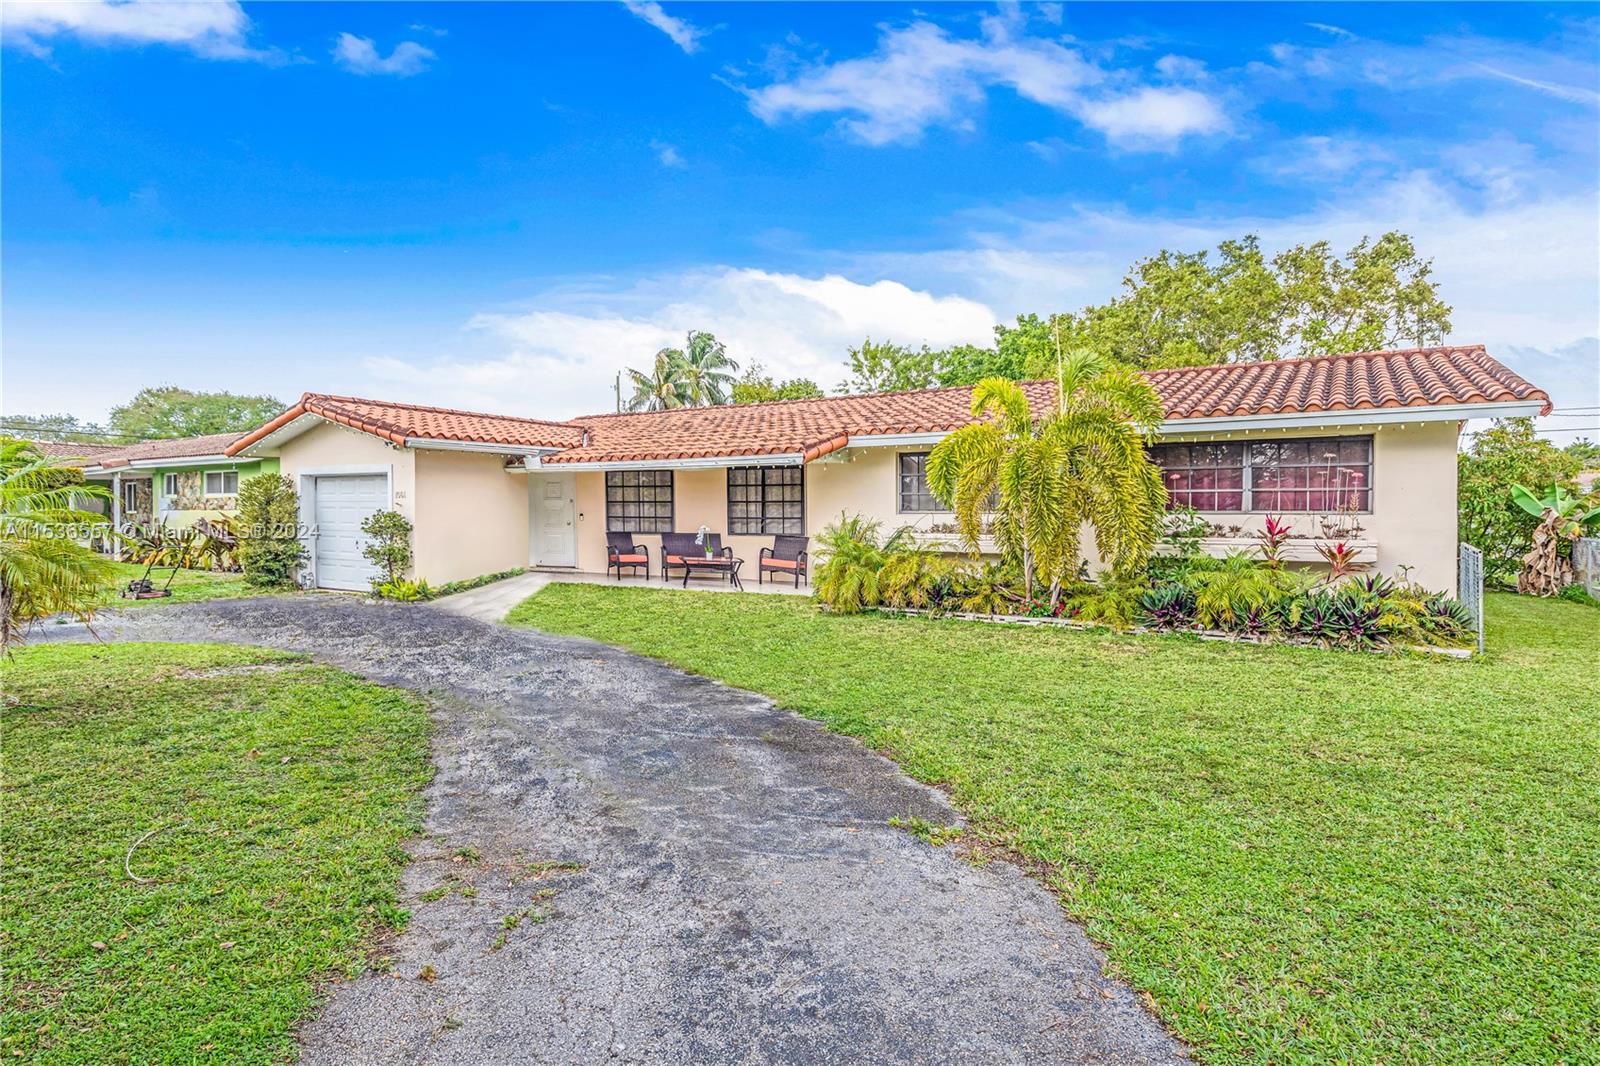 Property for Sale at 1061 Redbird Ave, Miami Springs, Miami-Dade County, Florida - Bedrooms: 4 
Bathrooms: 2  - $1,100,000